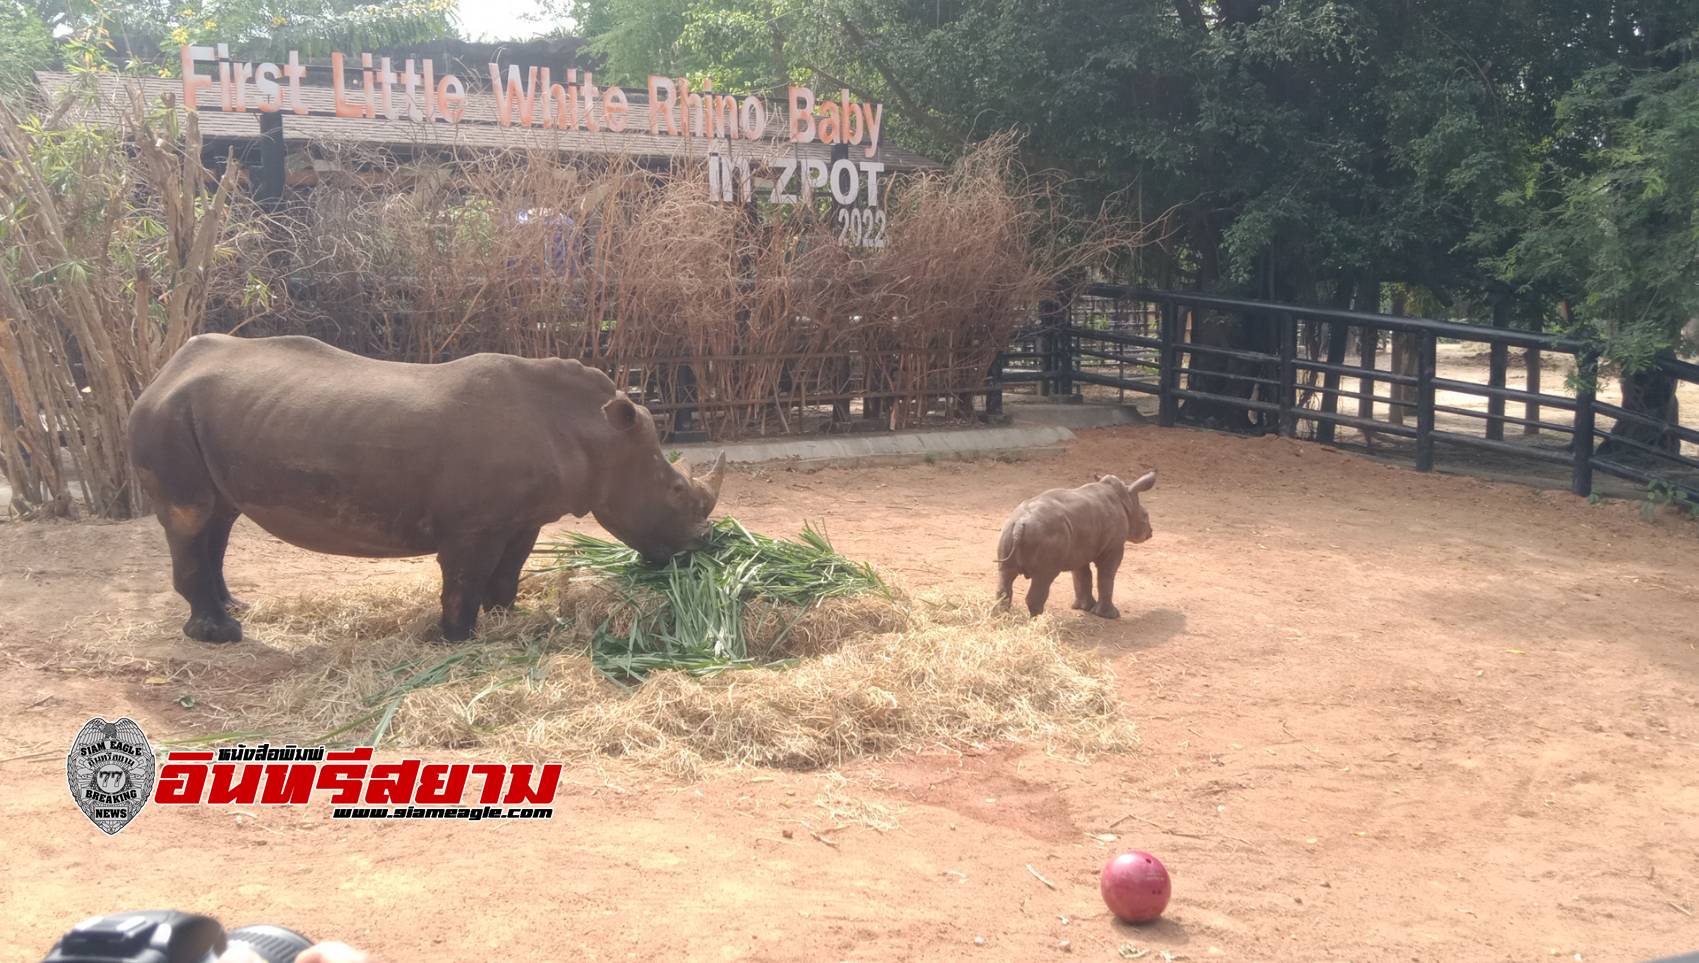 ชลบุรี-สวนสัตว์เปิดเขาเขียว เปิดตัว สมาชิกใหม่ “ลูกแรดขาว” ตัวแรกขององค์การสวนสัตว์